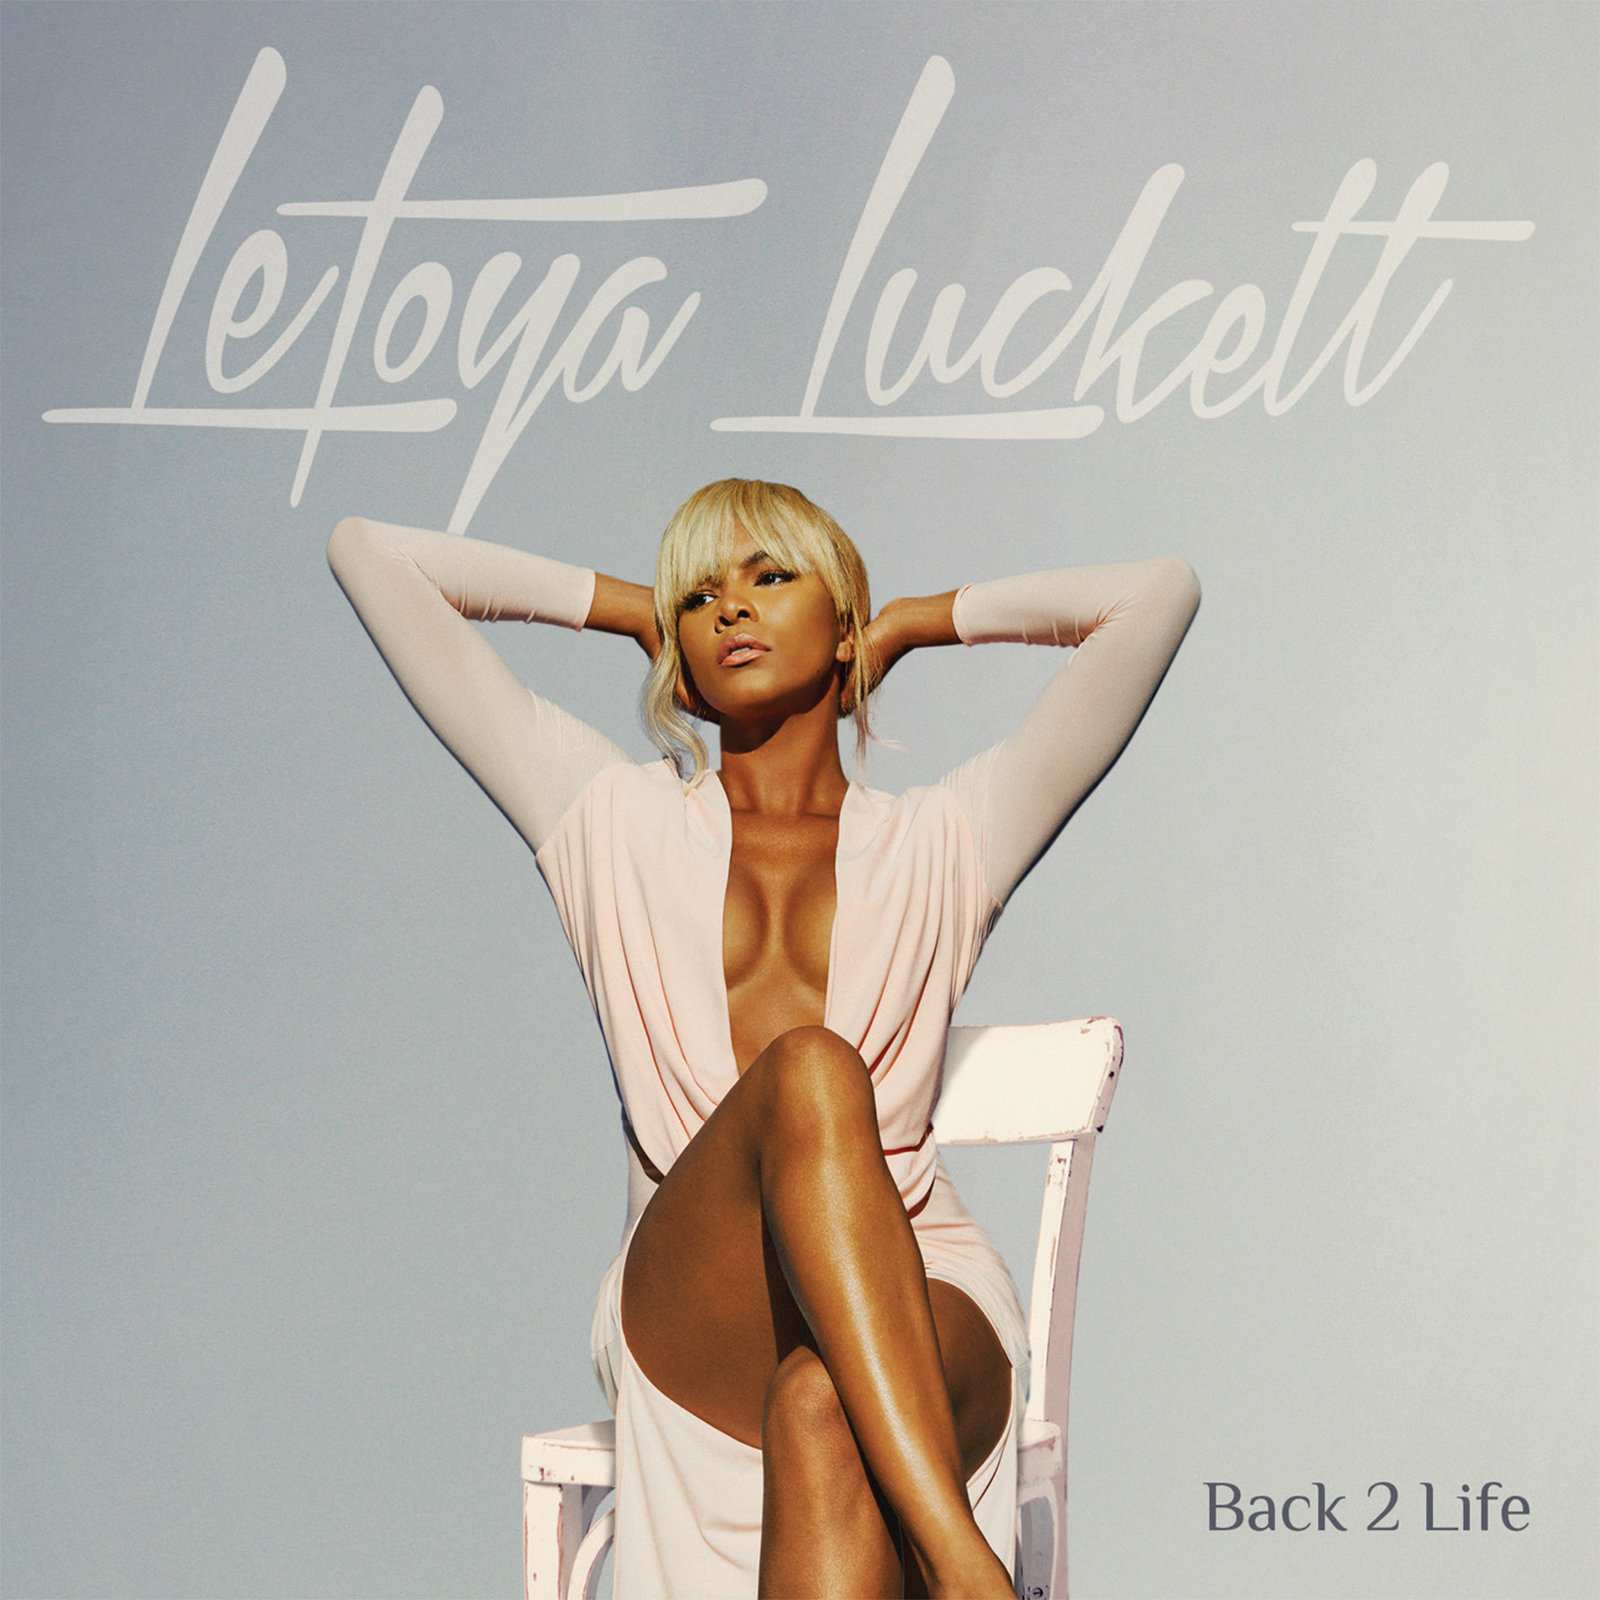 LeToya Luckett Reveals Cover Art, Release Date & Tracklist for Upcoming Album “Back 2 Life”